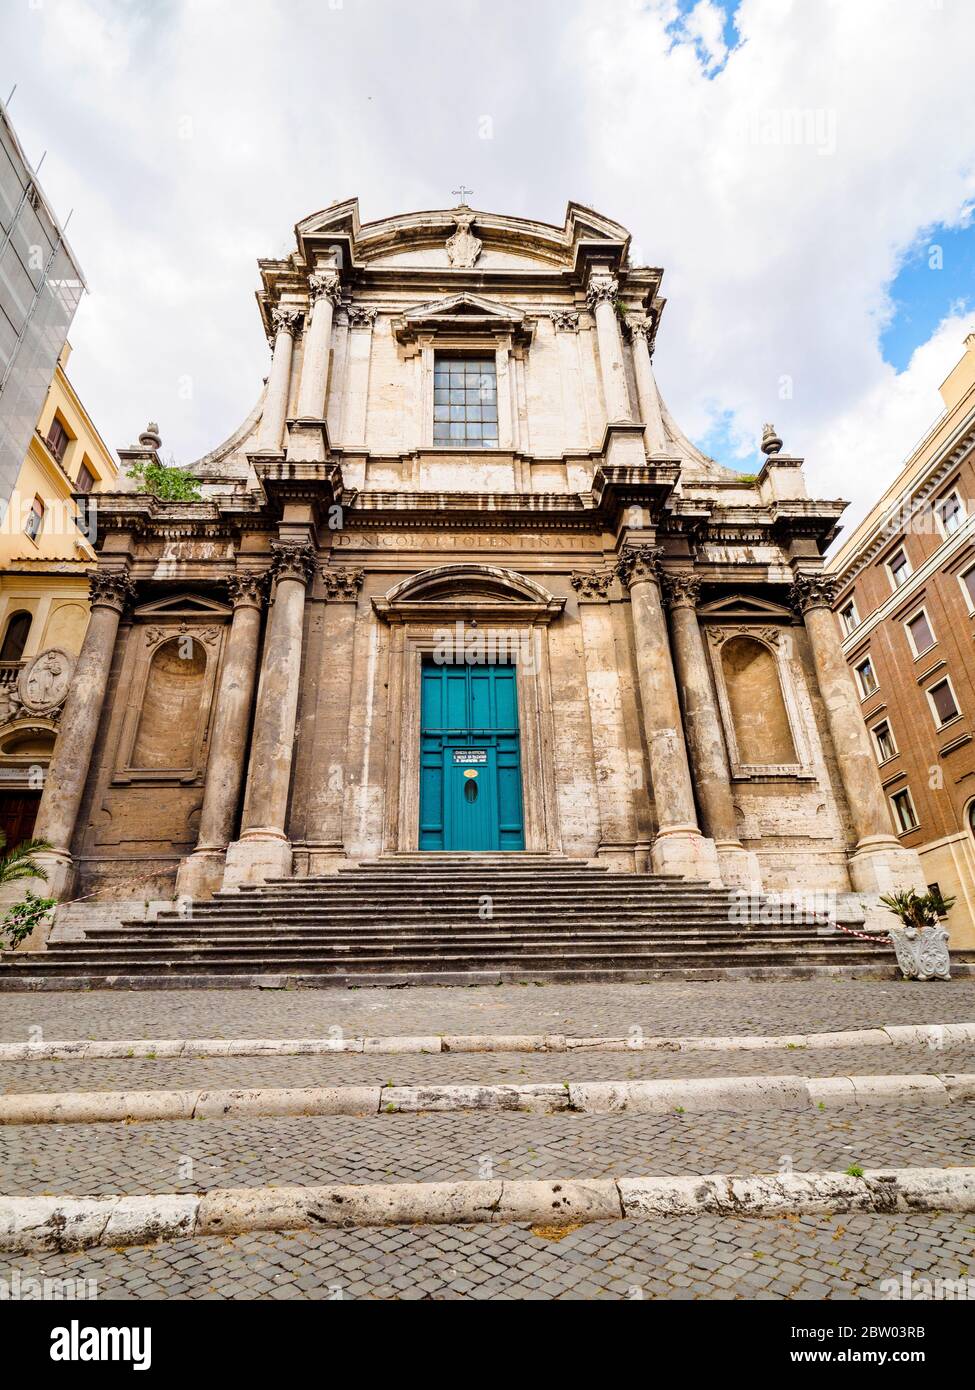 The church of San Nicola da Tolentino (Saint Nicholas of Tolentino) - Rome, Italy Stock Photo